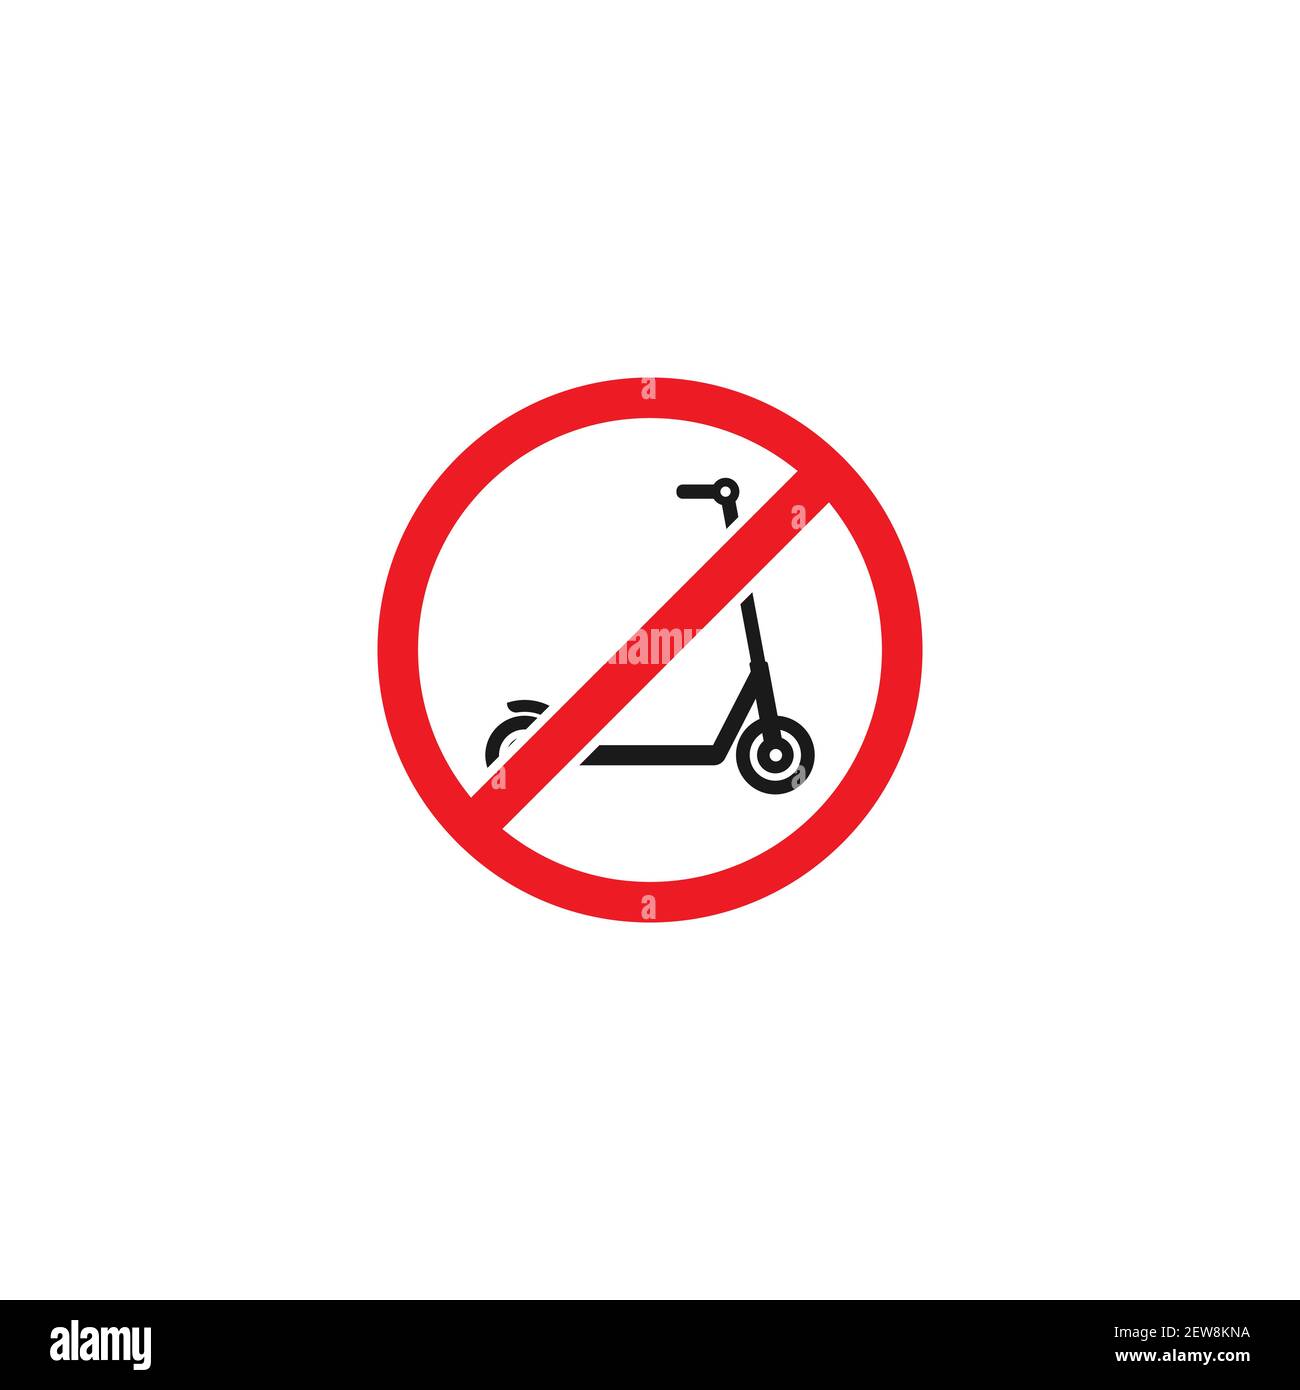 Schwarzer Kick Scooter oder Laufrad in rot gekreuzten Kreis Symbol. Kein Push Scooter s Schild isoliert auf weiß. Vektorgrafik. Verboten, nicht erlaubt tra Stock Vektor